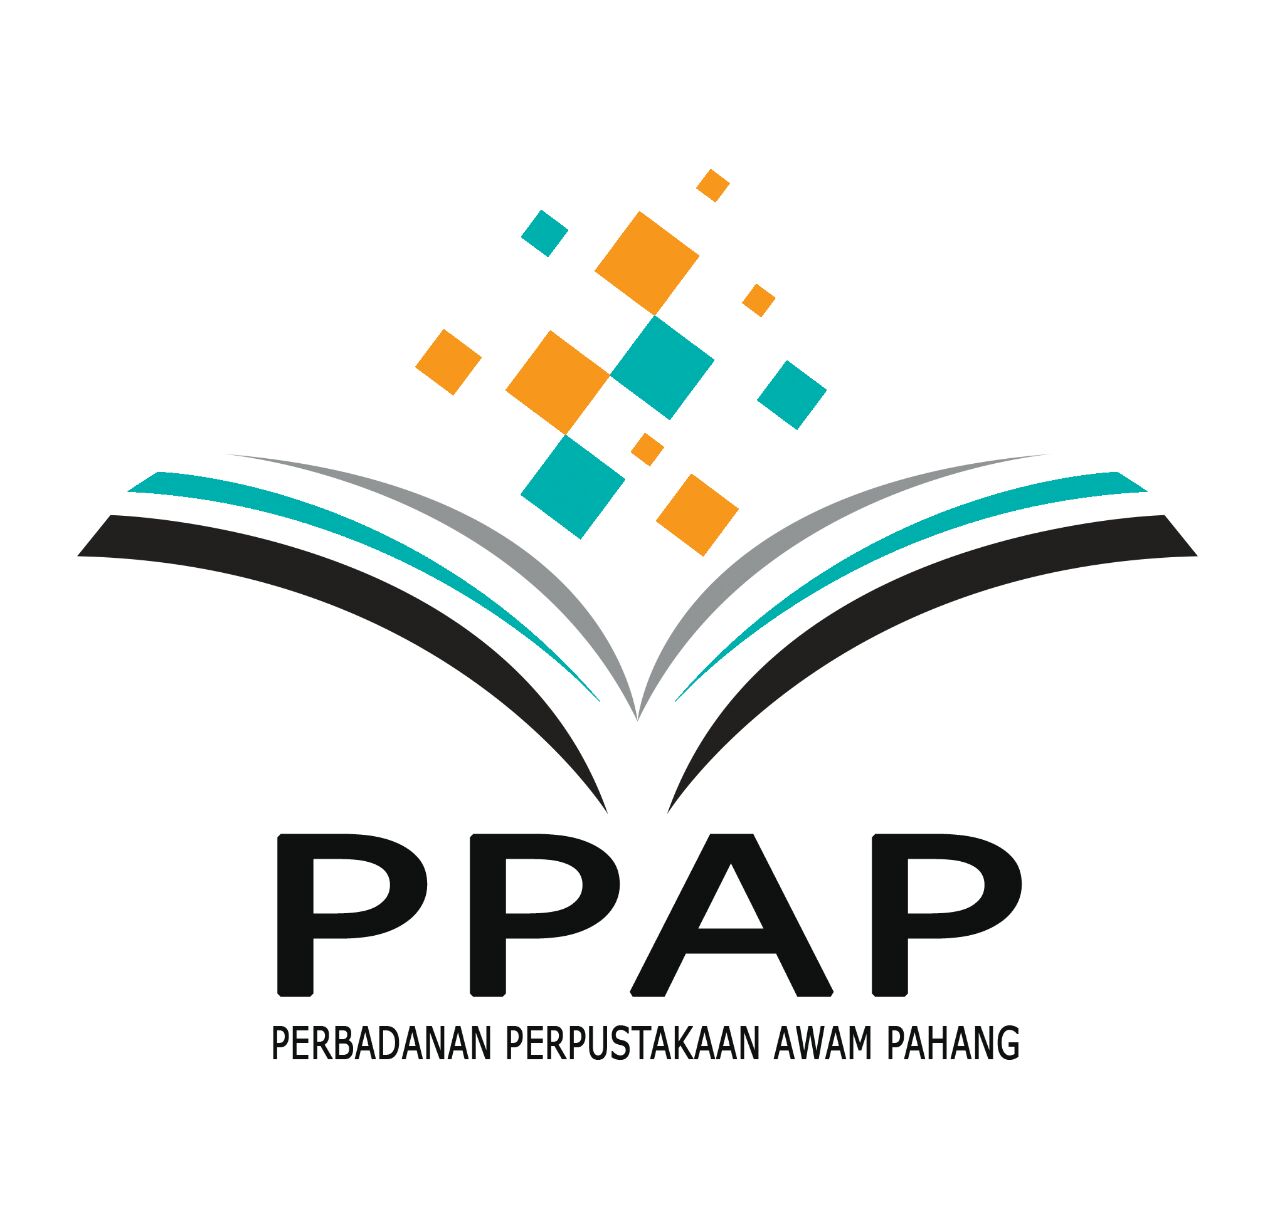 Perbadanan Perpustakaan Awam Pahang (PPAP)